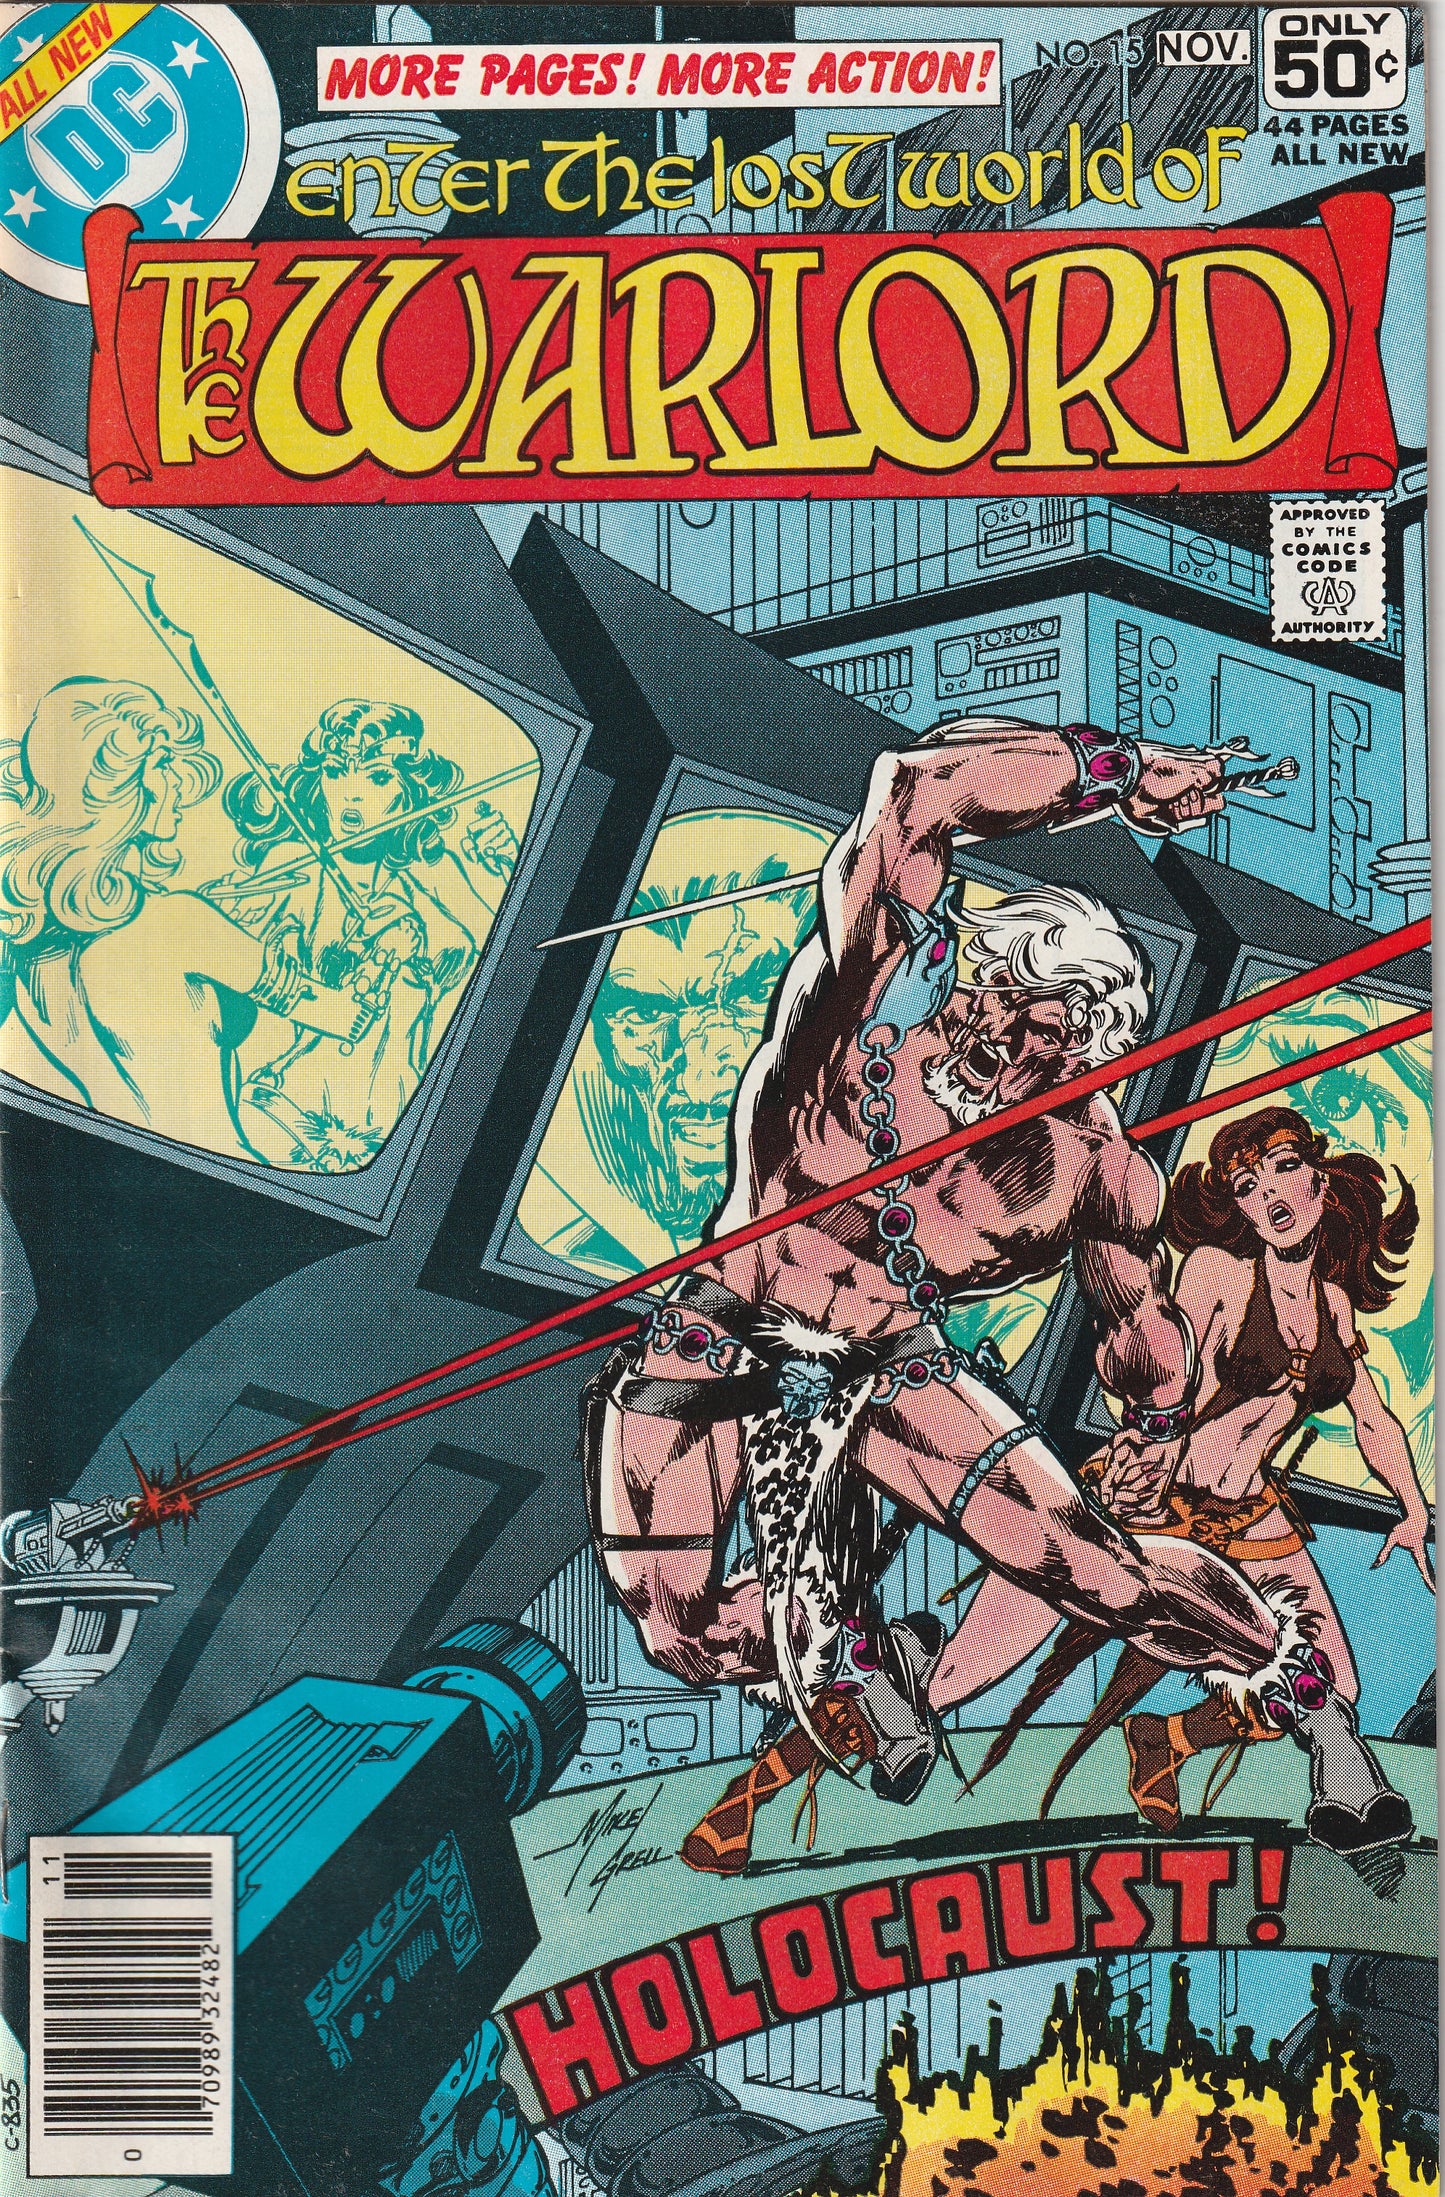 Warlord #15 (1978) - Tara returns; Warlord has a son